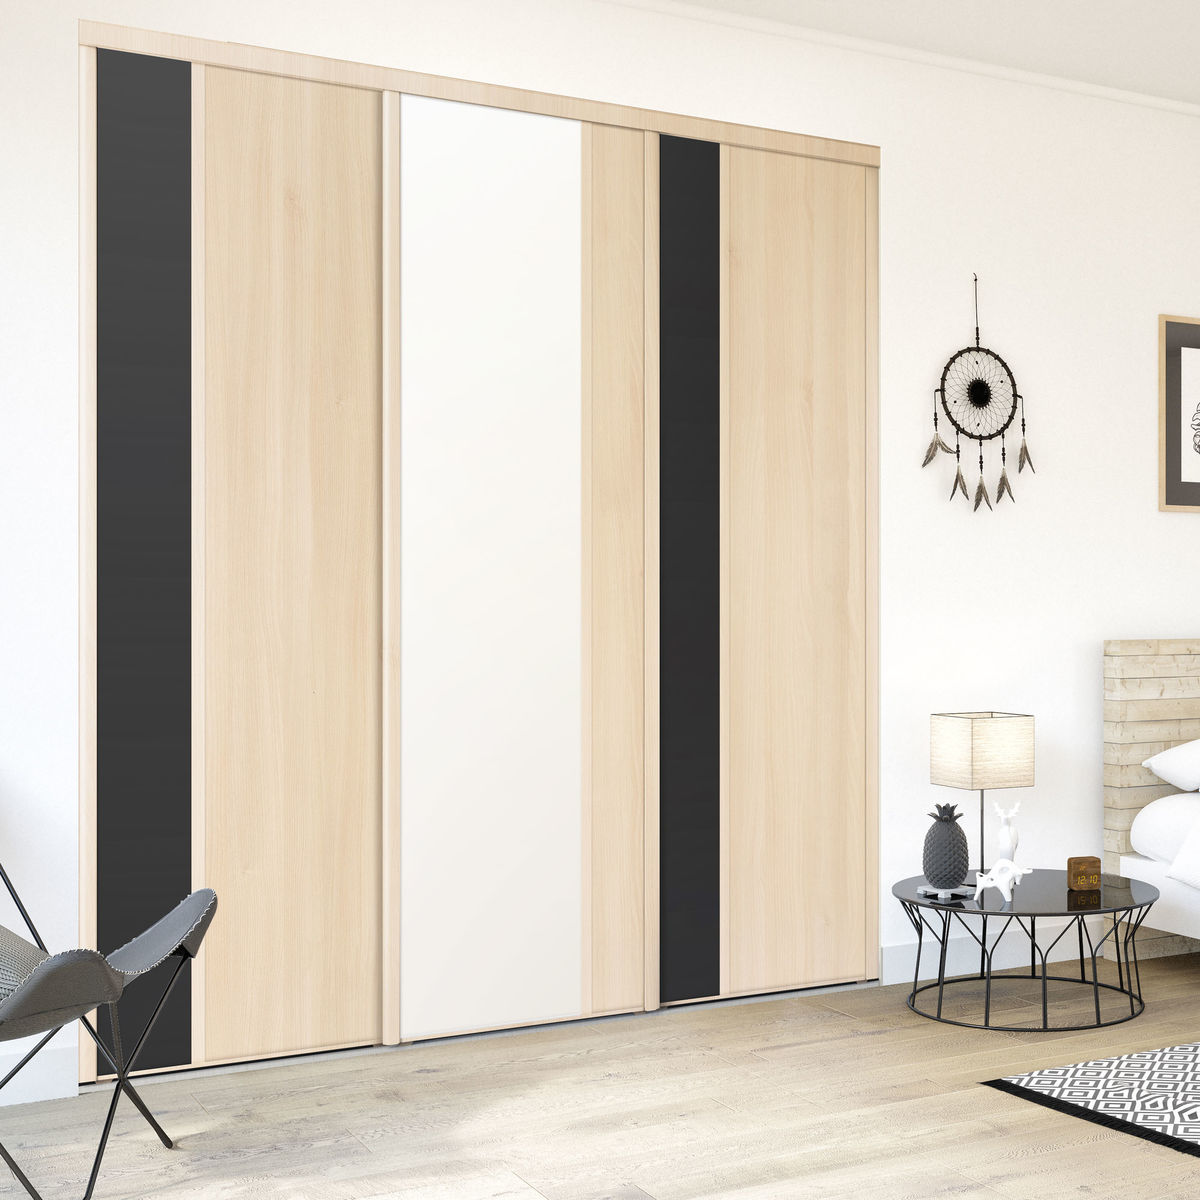 Façade de placard coulissante 3 portes décor acacia clair, décor noir intense, décor blanc mat